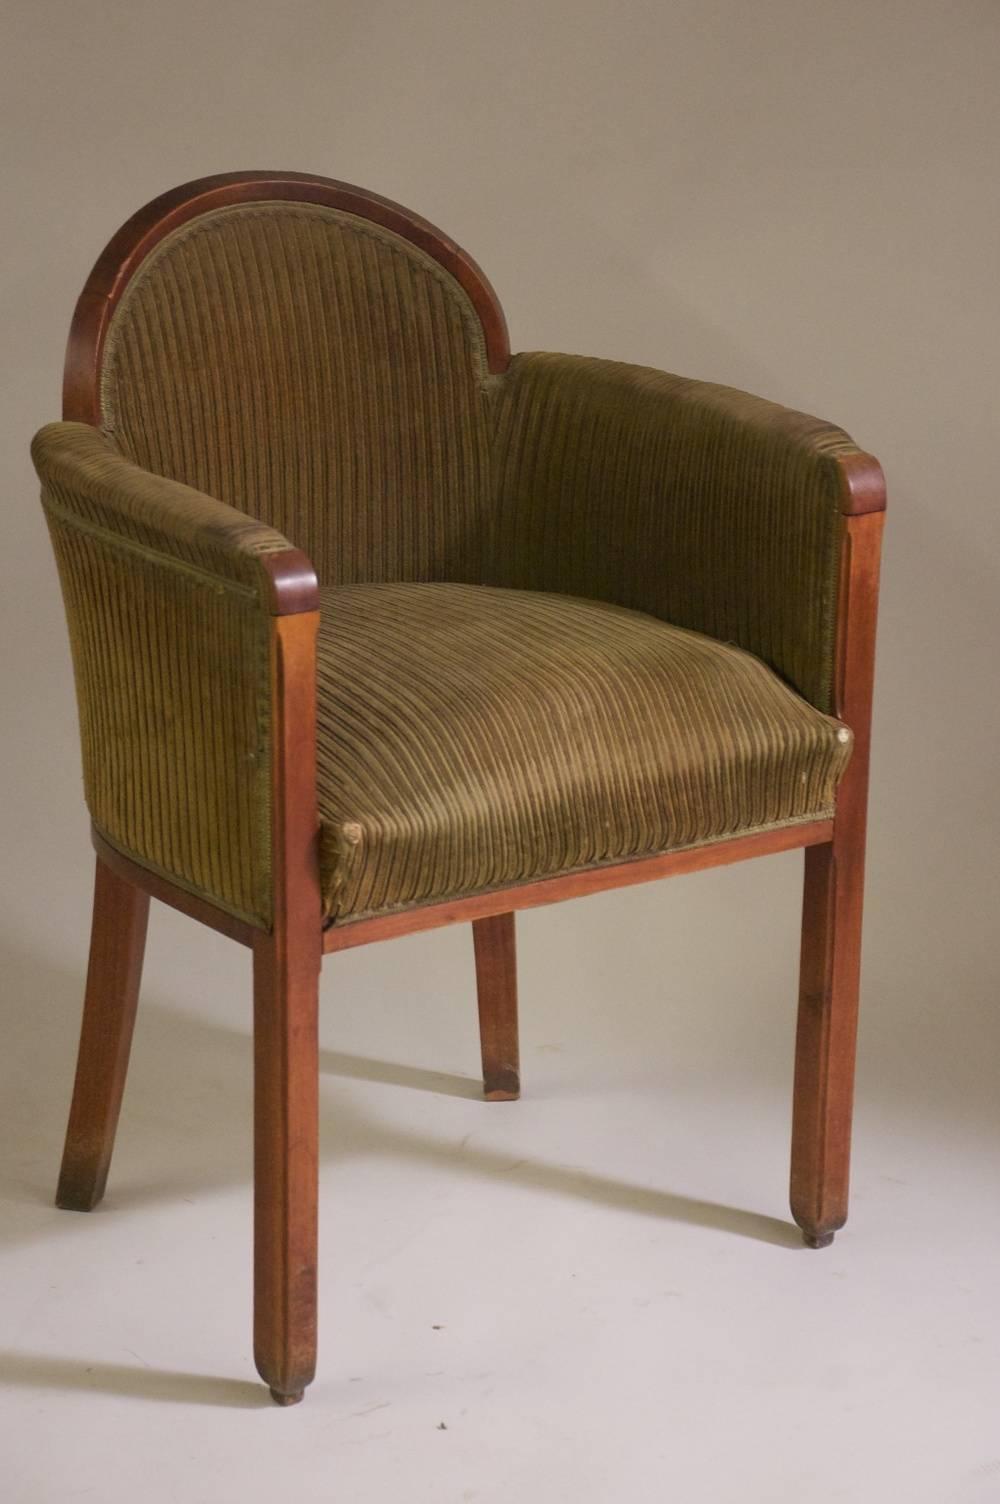 Fauteuils classiques Art déco français à dossier bas. Deux paires disponibles de Paul Follot circa 1927 en acajou sculpté. Documenté.

Veuillez noter que ces chaises ne sont pas restaurées sur les photographies.

Le prix est fixé par paire.
 